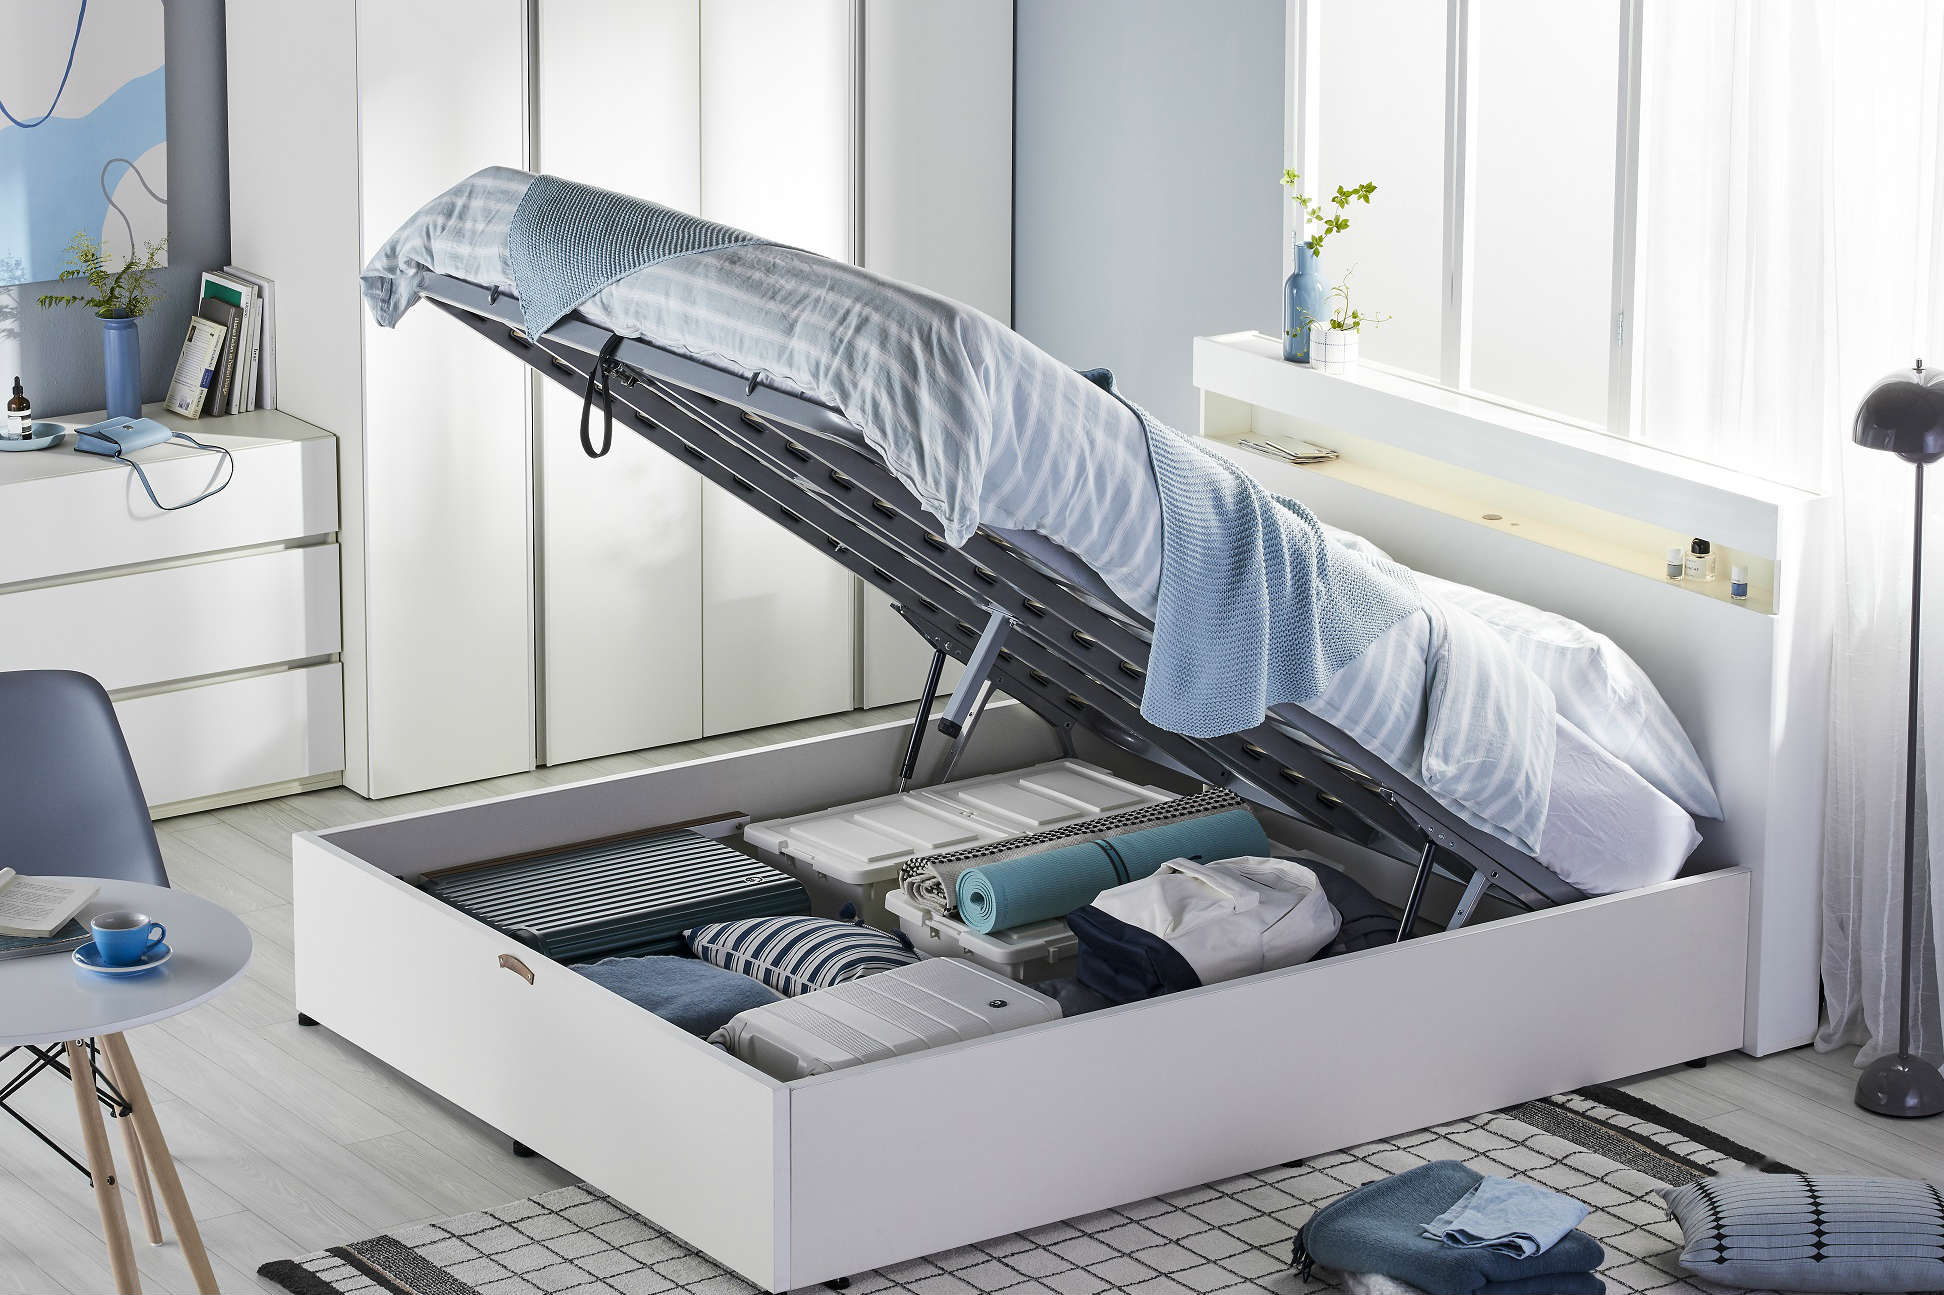 한샘, 침대 아래쪽 공간을 수납공간으로 활용하는 새 침대 선보여 